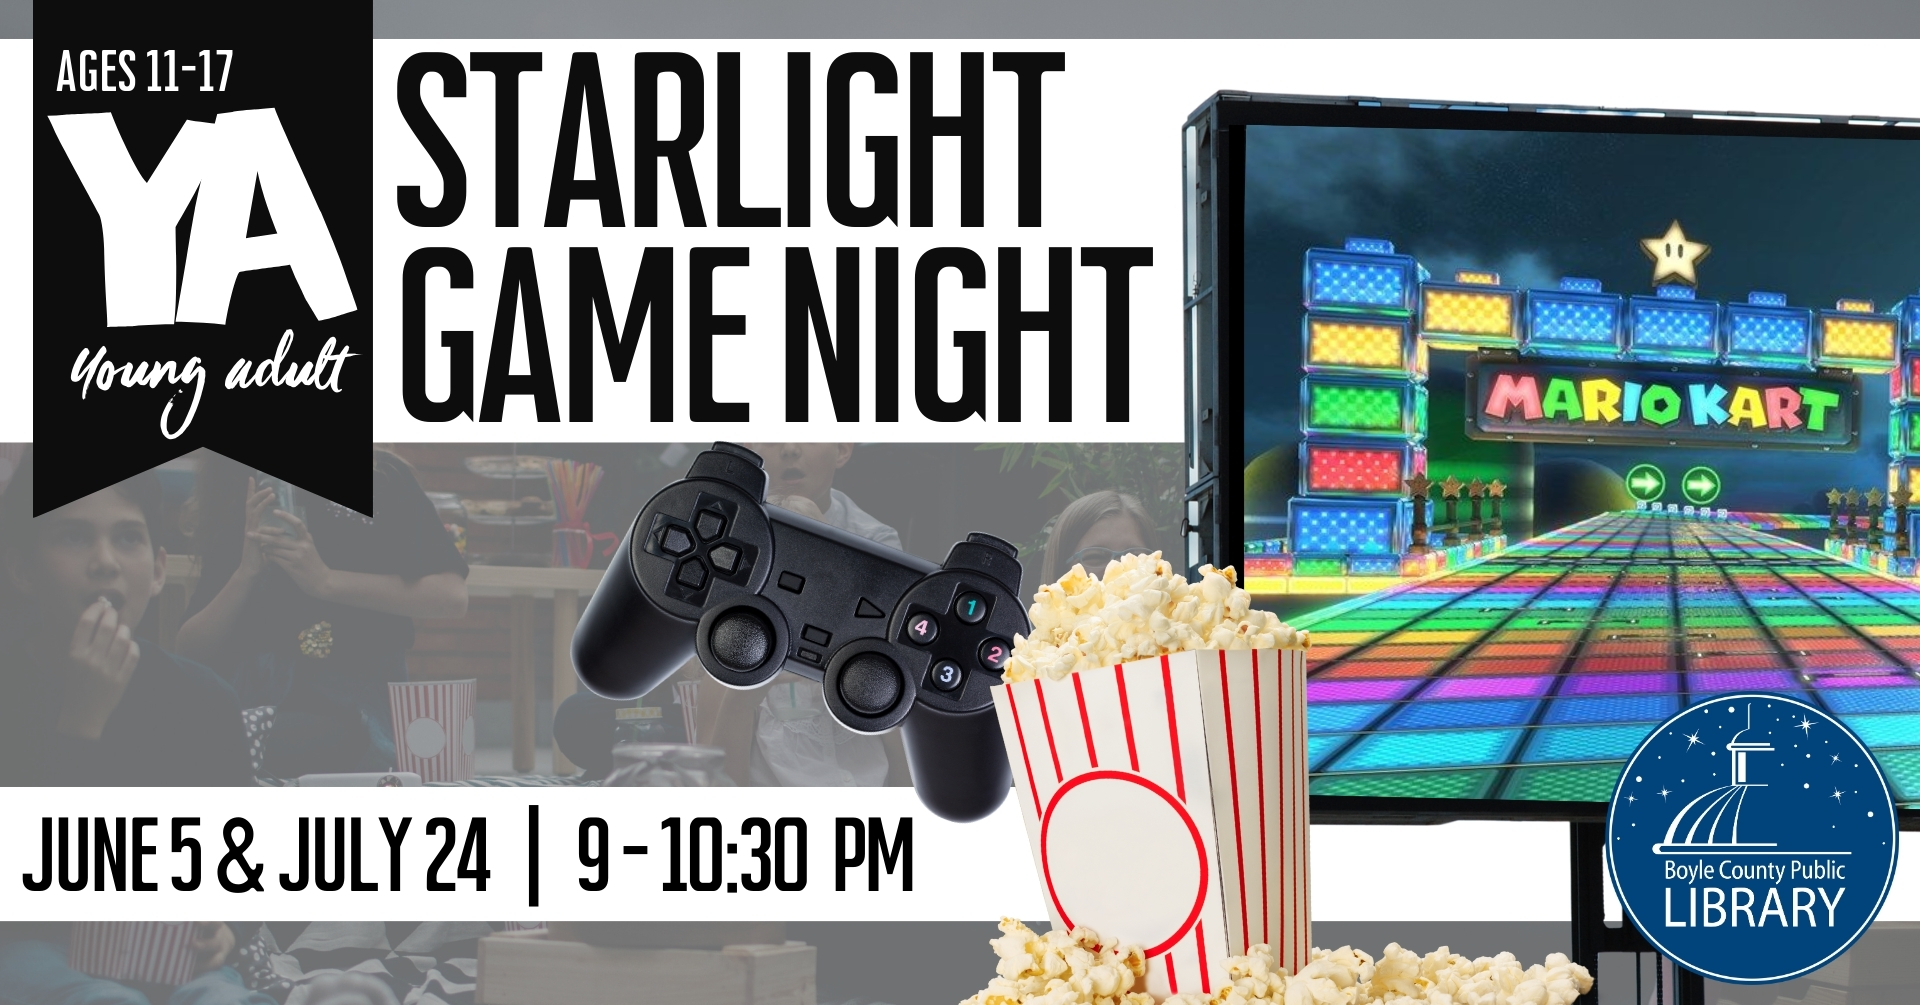 YA Starlight Game Night Poster